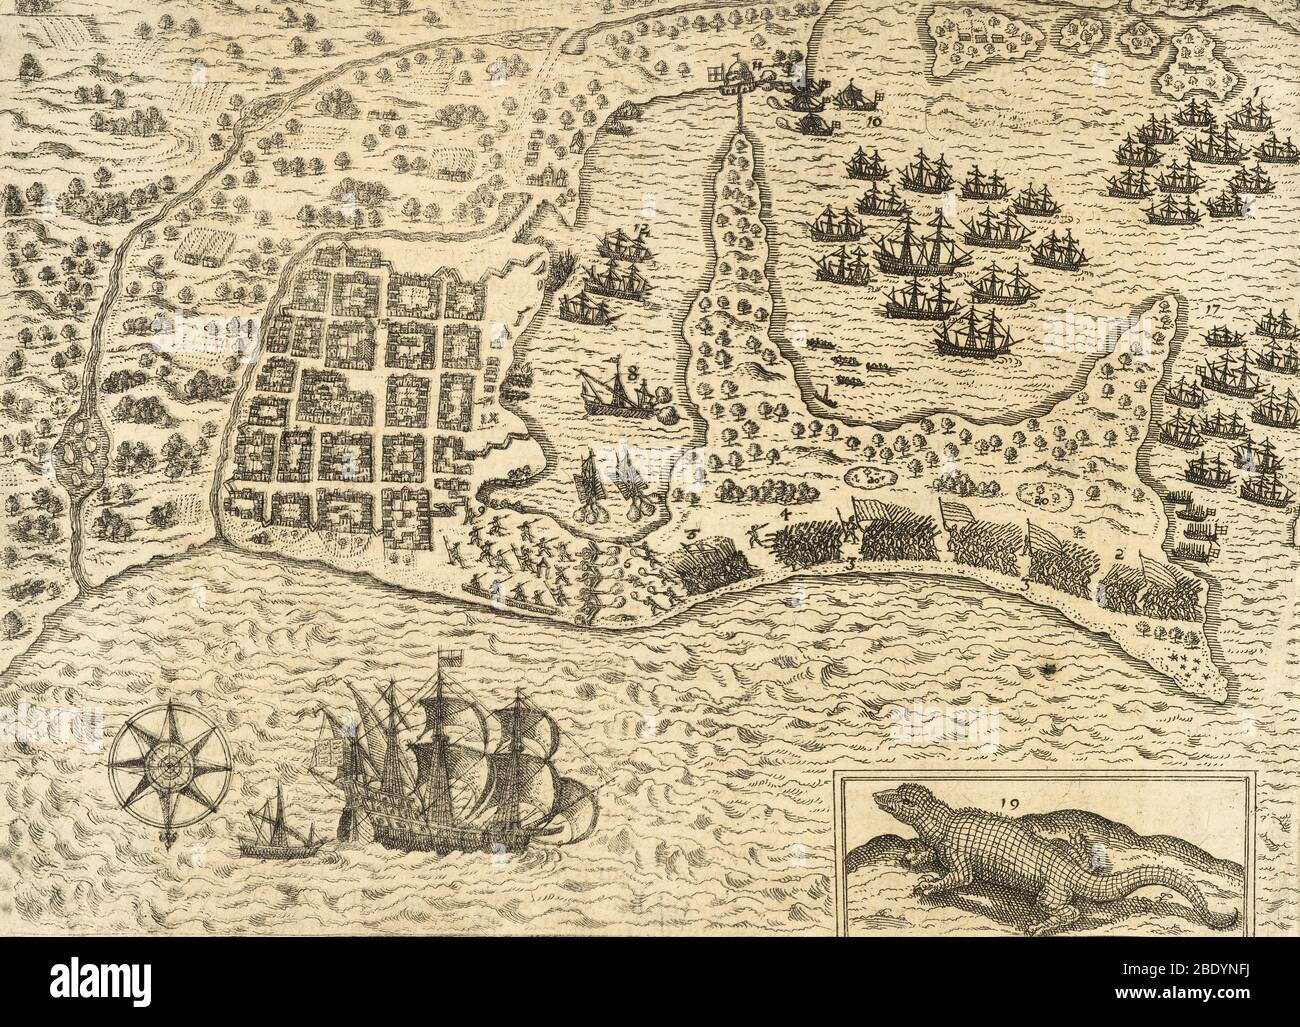 Francis Drake, capture de Carthagène, 1586 Banque D'Images